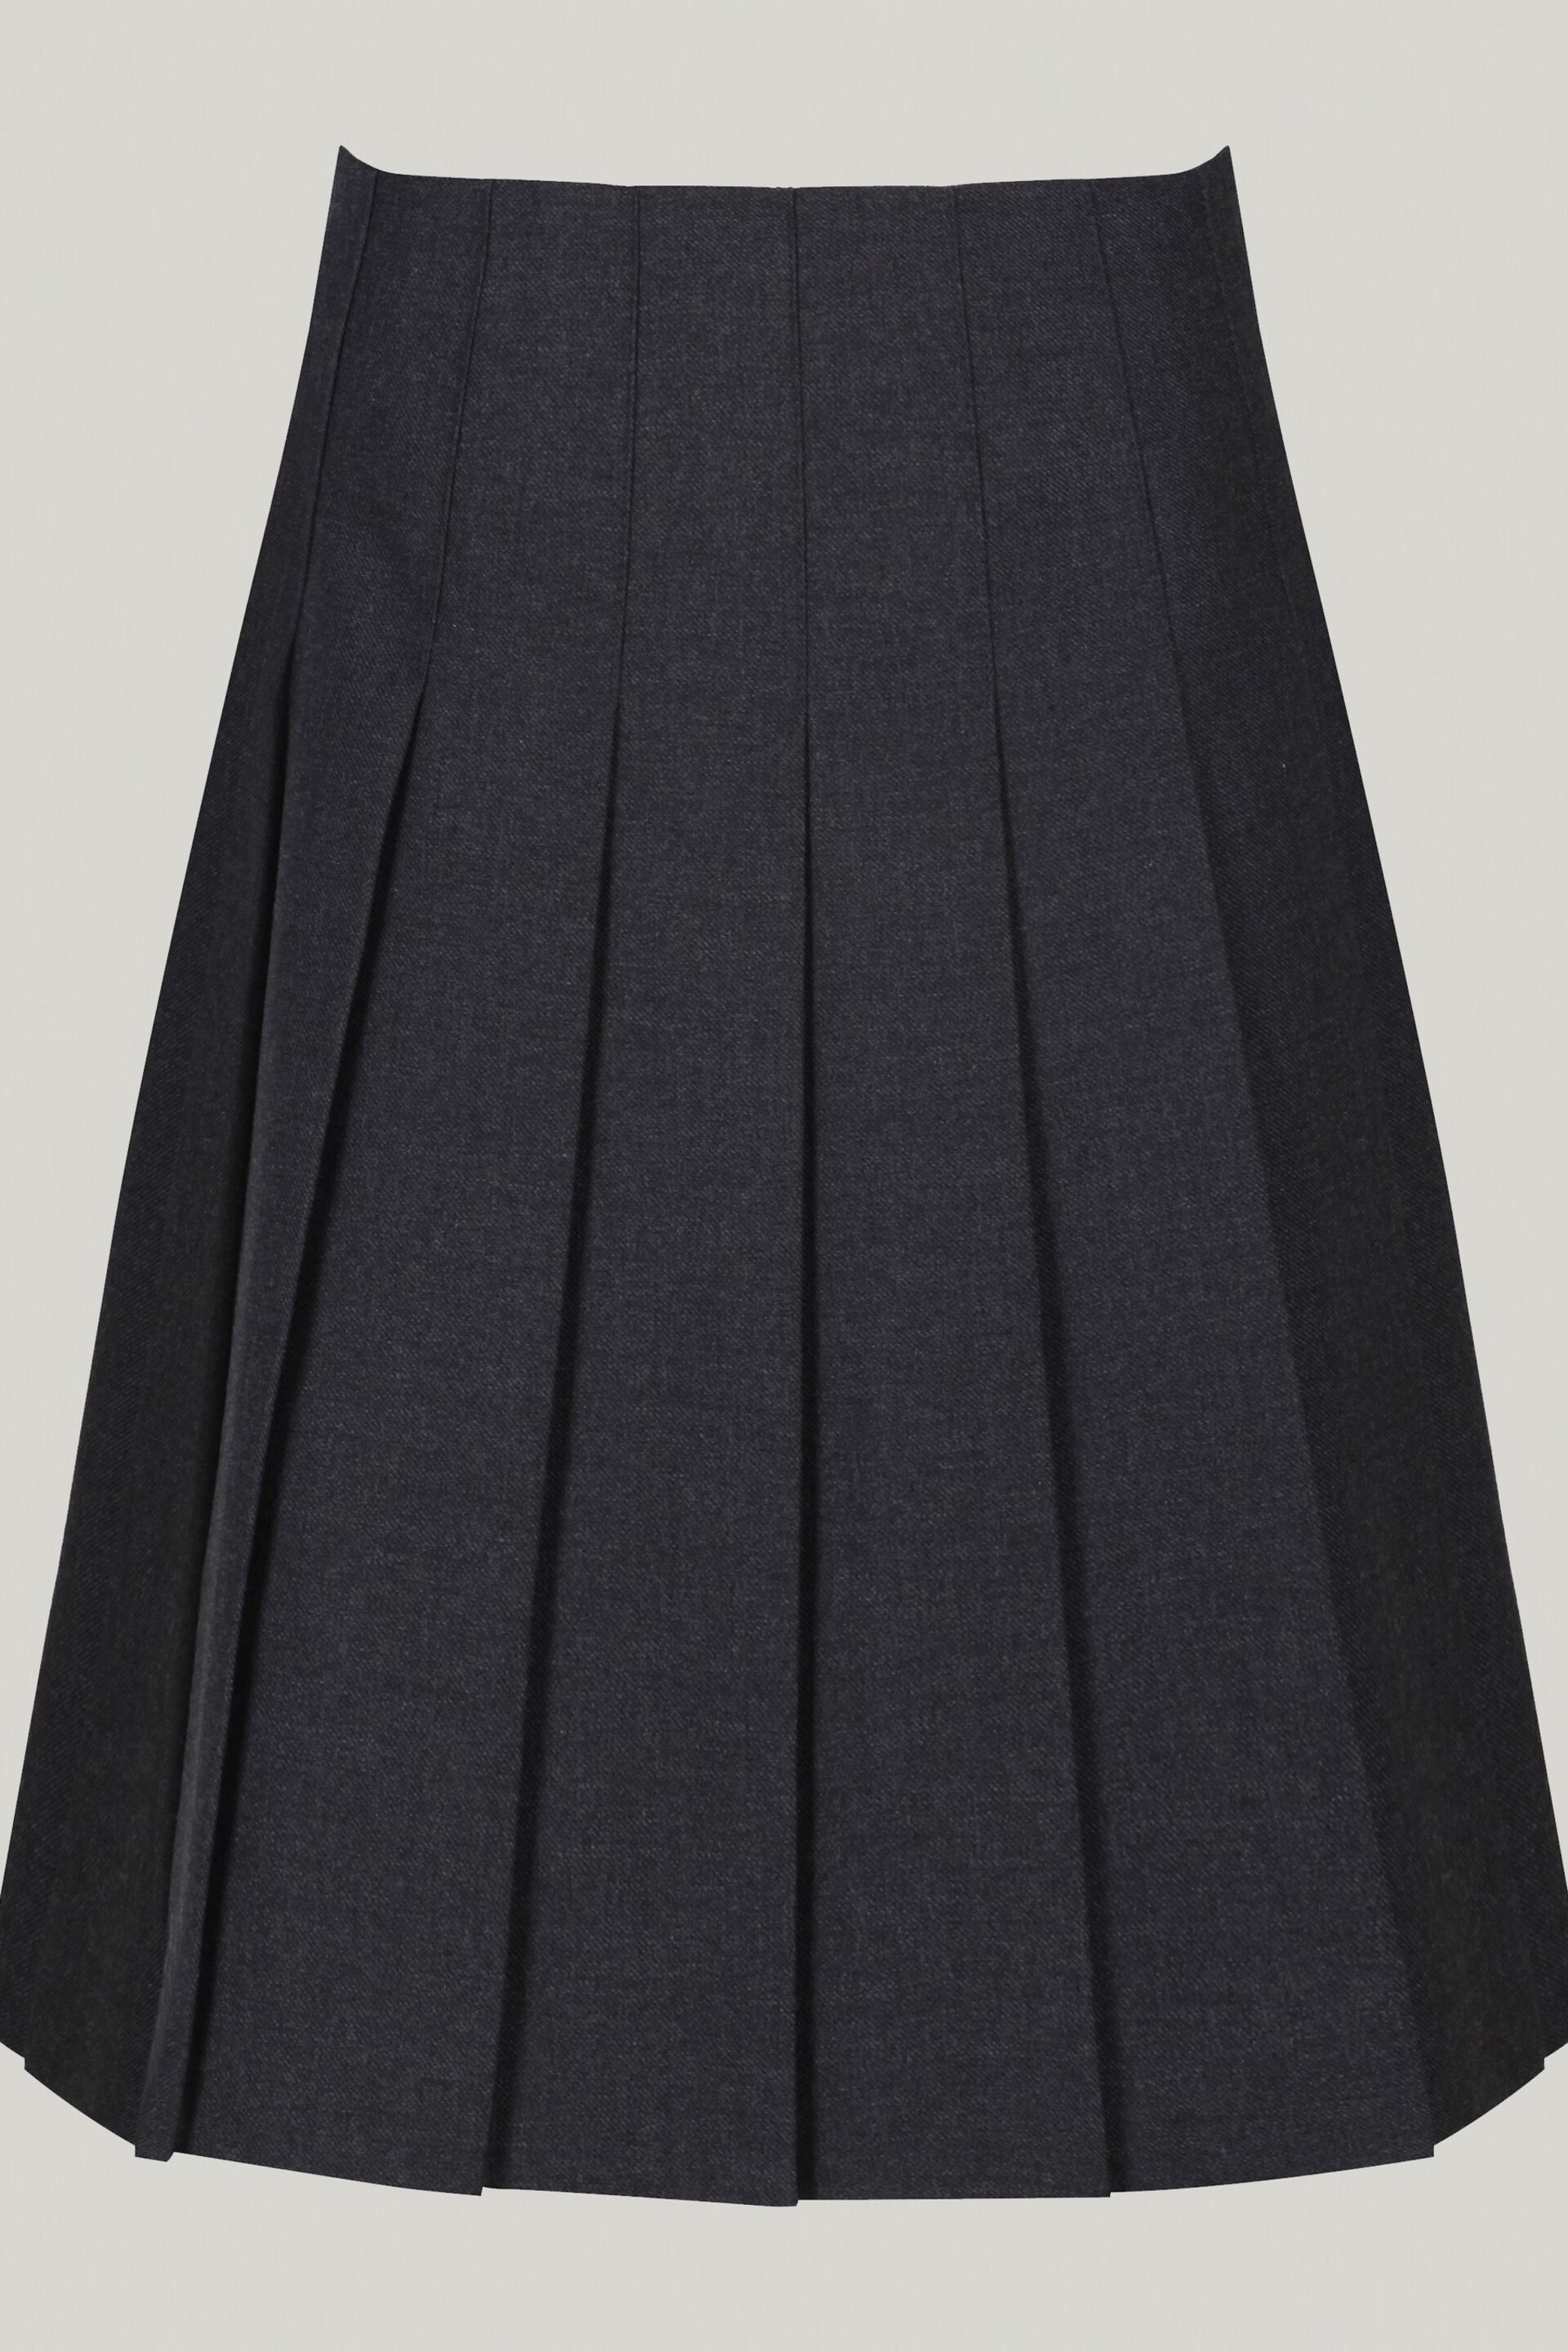 Trutex Grey 16" Stitch Down Permament Pleats School Skirt (10-16 Yrs) - Image 4 of 5